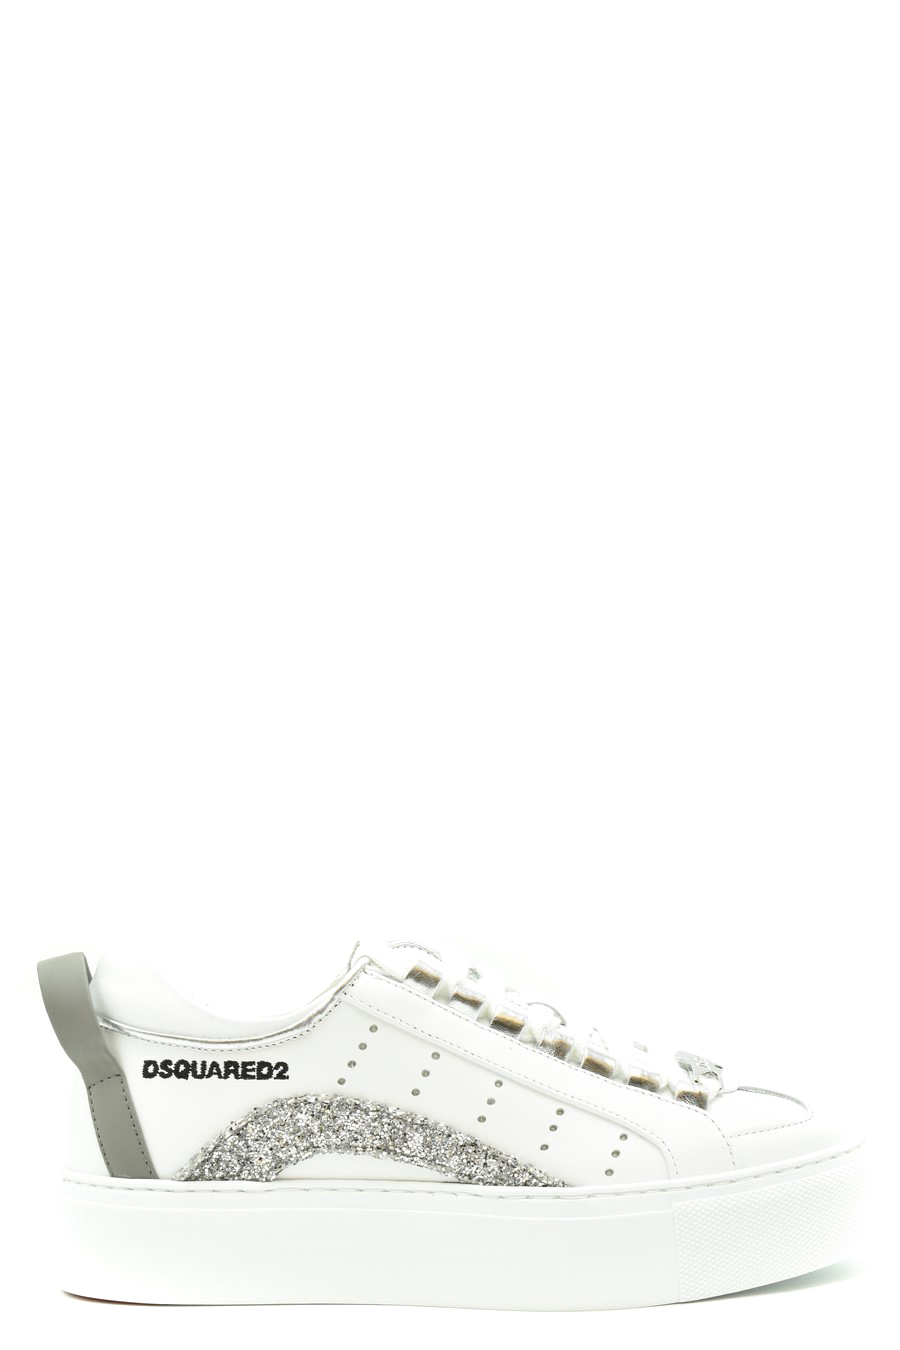 DSQUARED2 Sneakers | ViganoBoutique.com